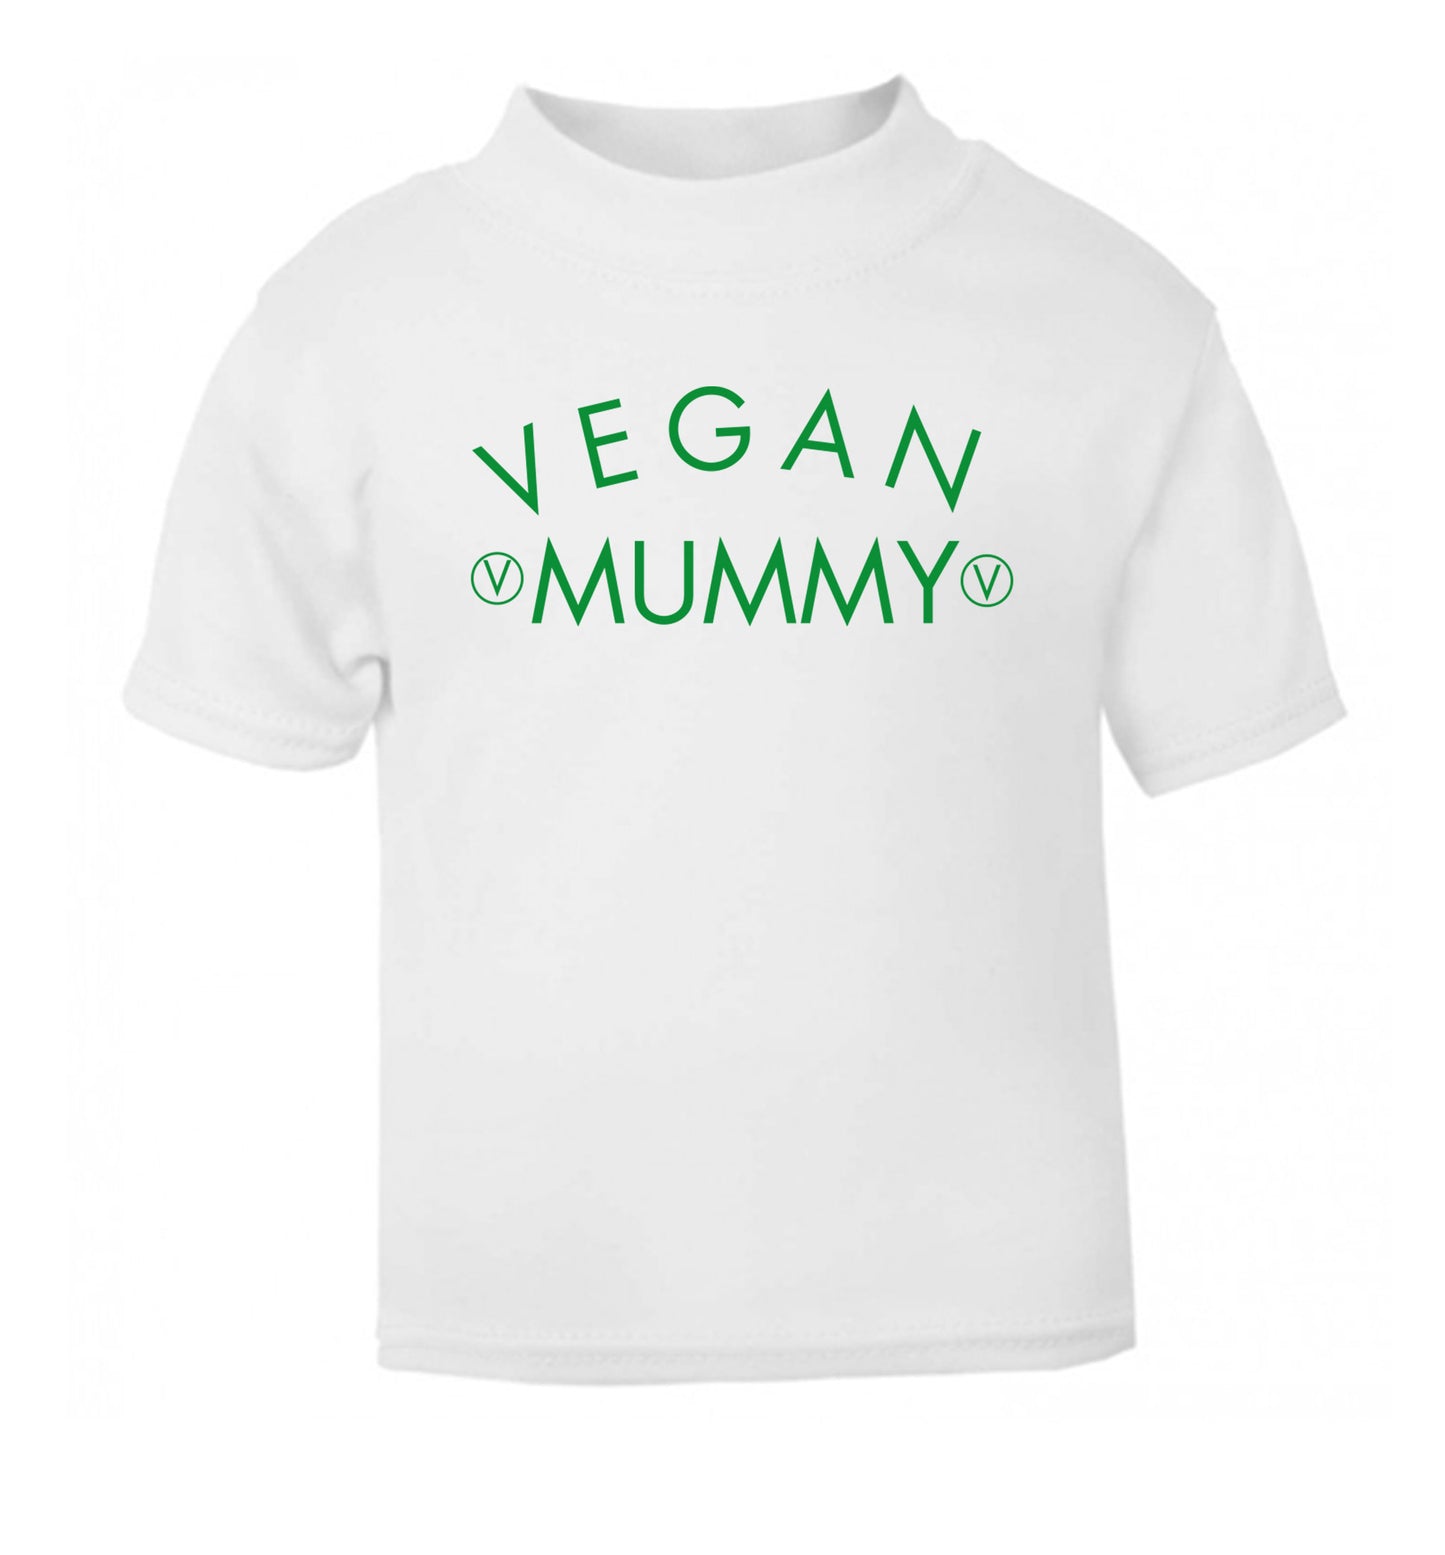 Vegan mummy white Baby Toddler Tshirt 2 Years